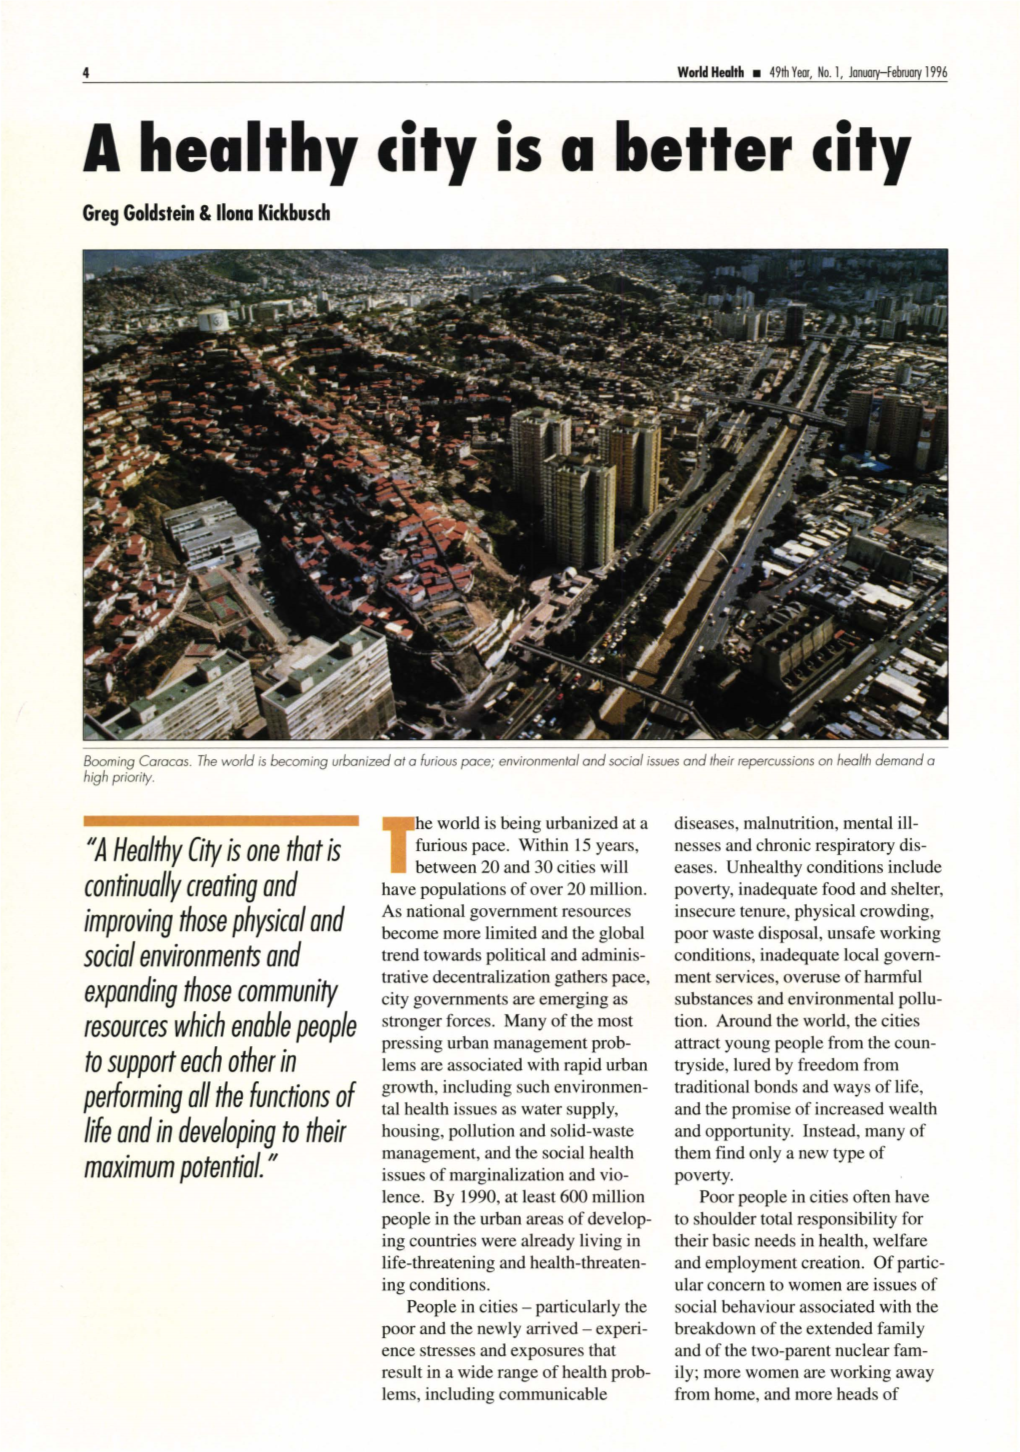 A Healthy City Is a Better City Greg Goldstein &Llona Kickbusch